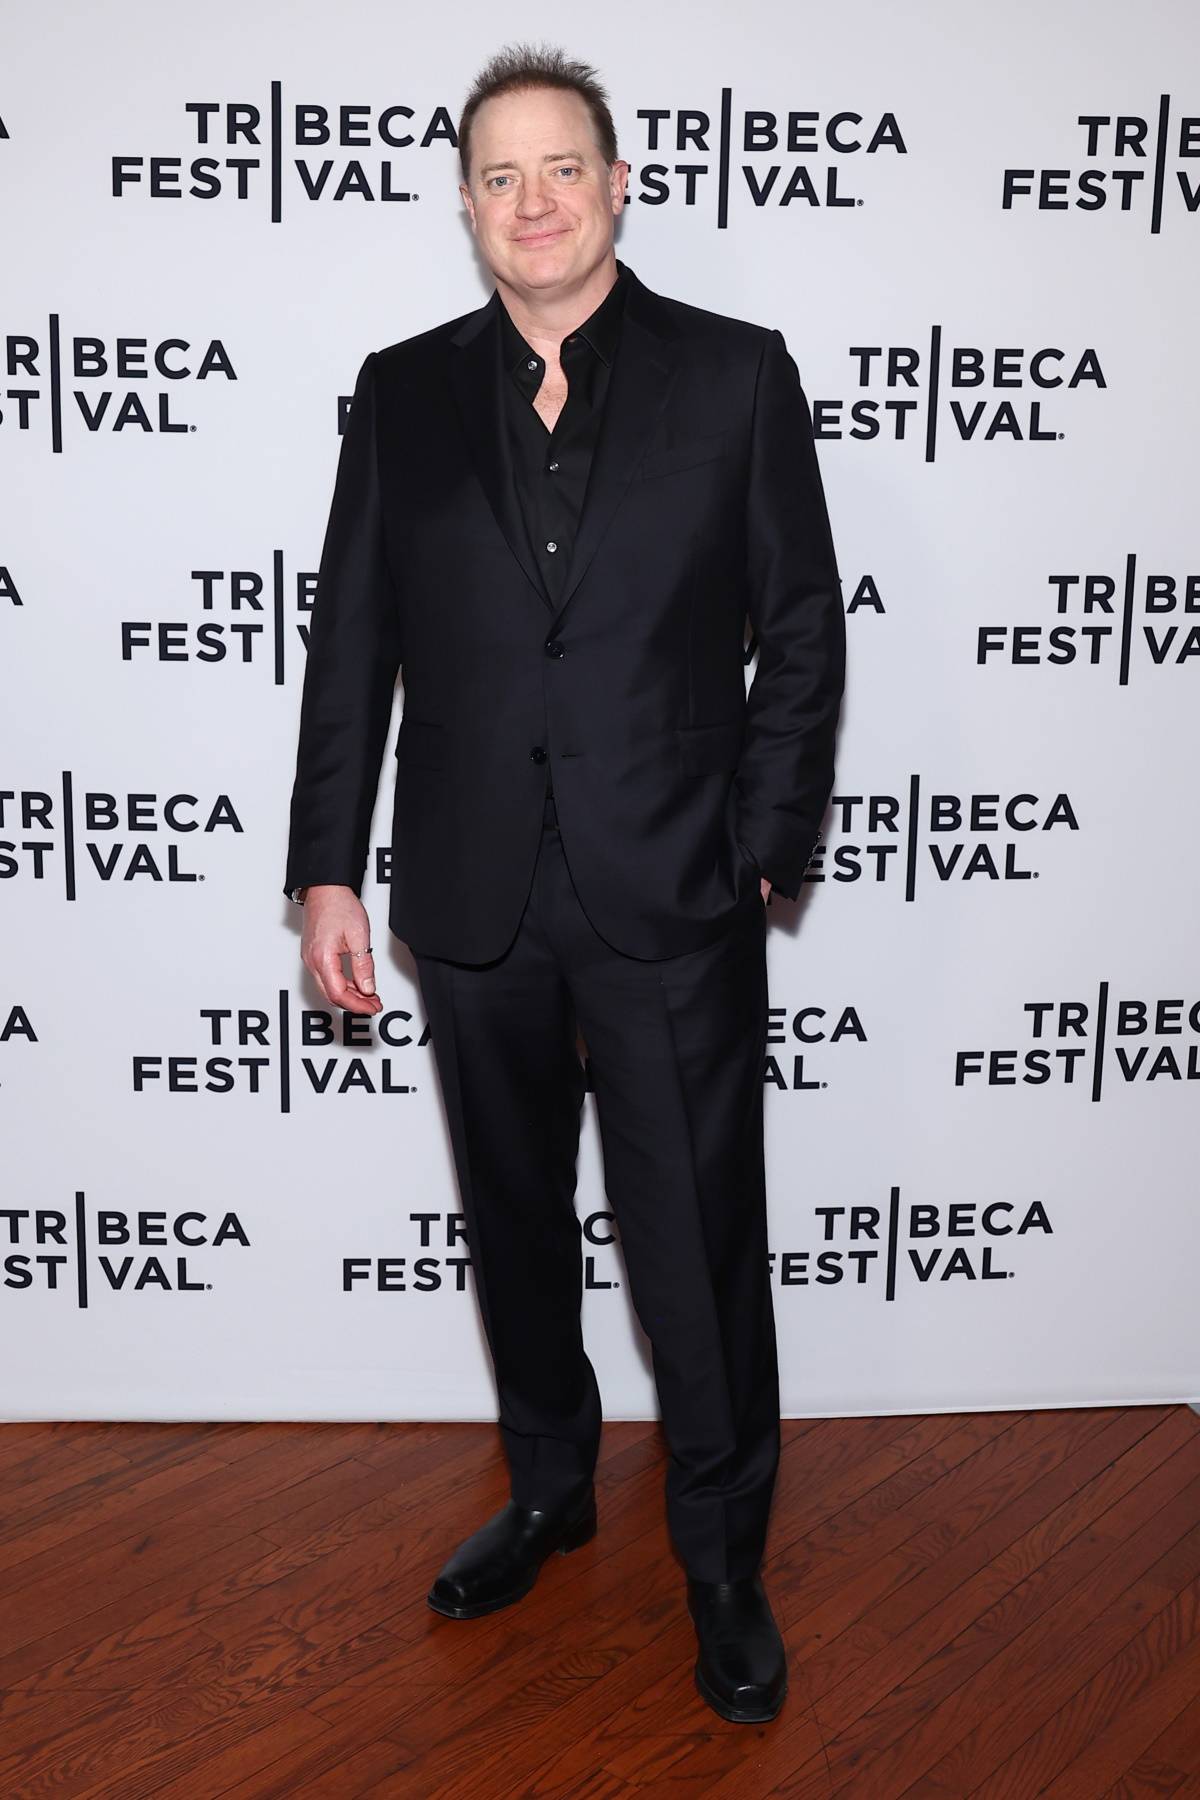 Brendan Fraser 